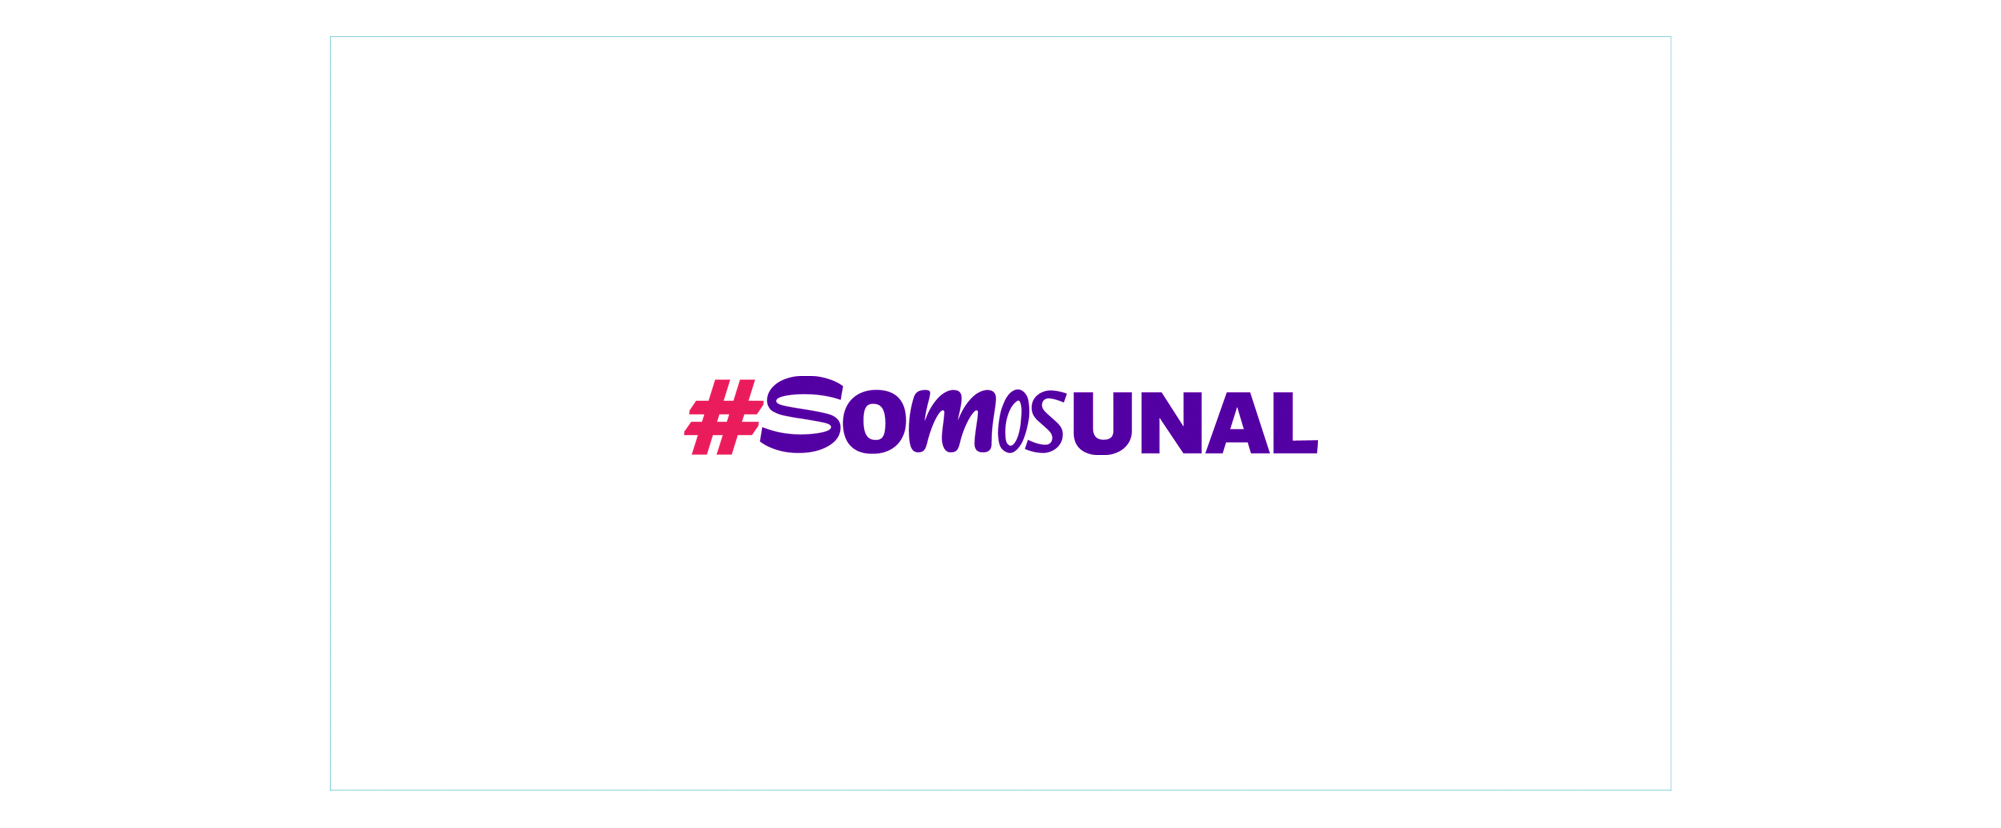 Campaña actual #SomosUNAL